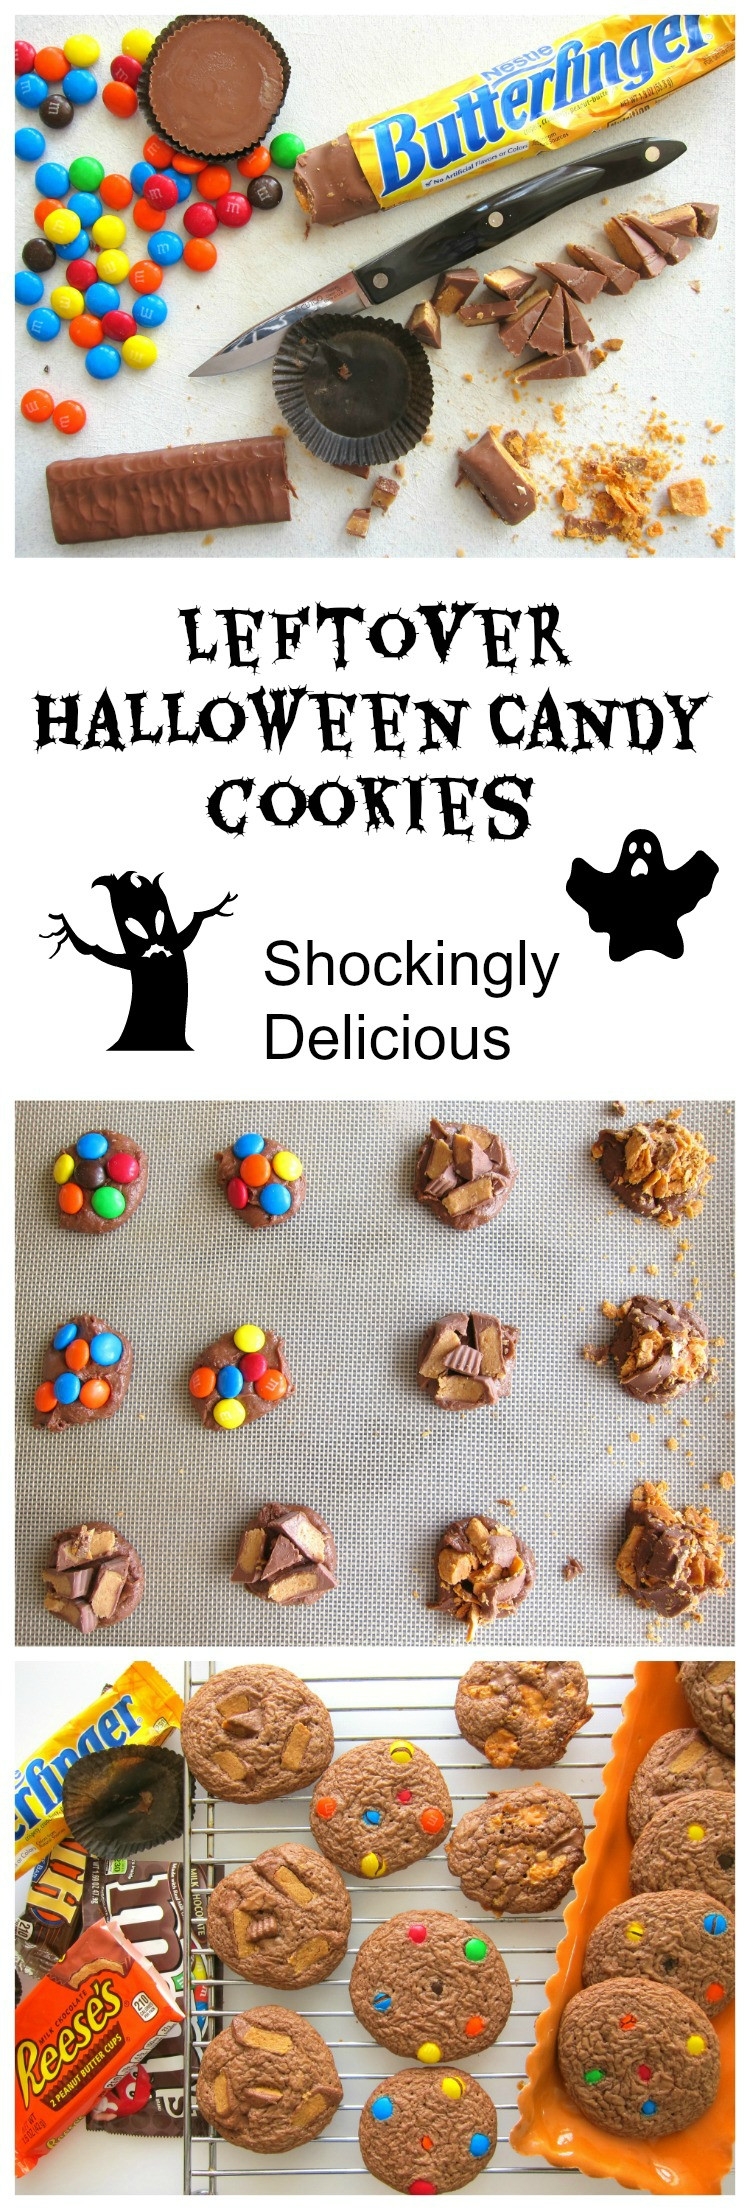 Halloween Candy Cookies
 Leftover Halloween Candy Cookies